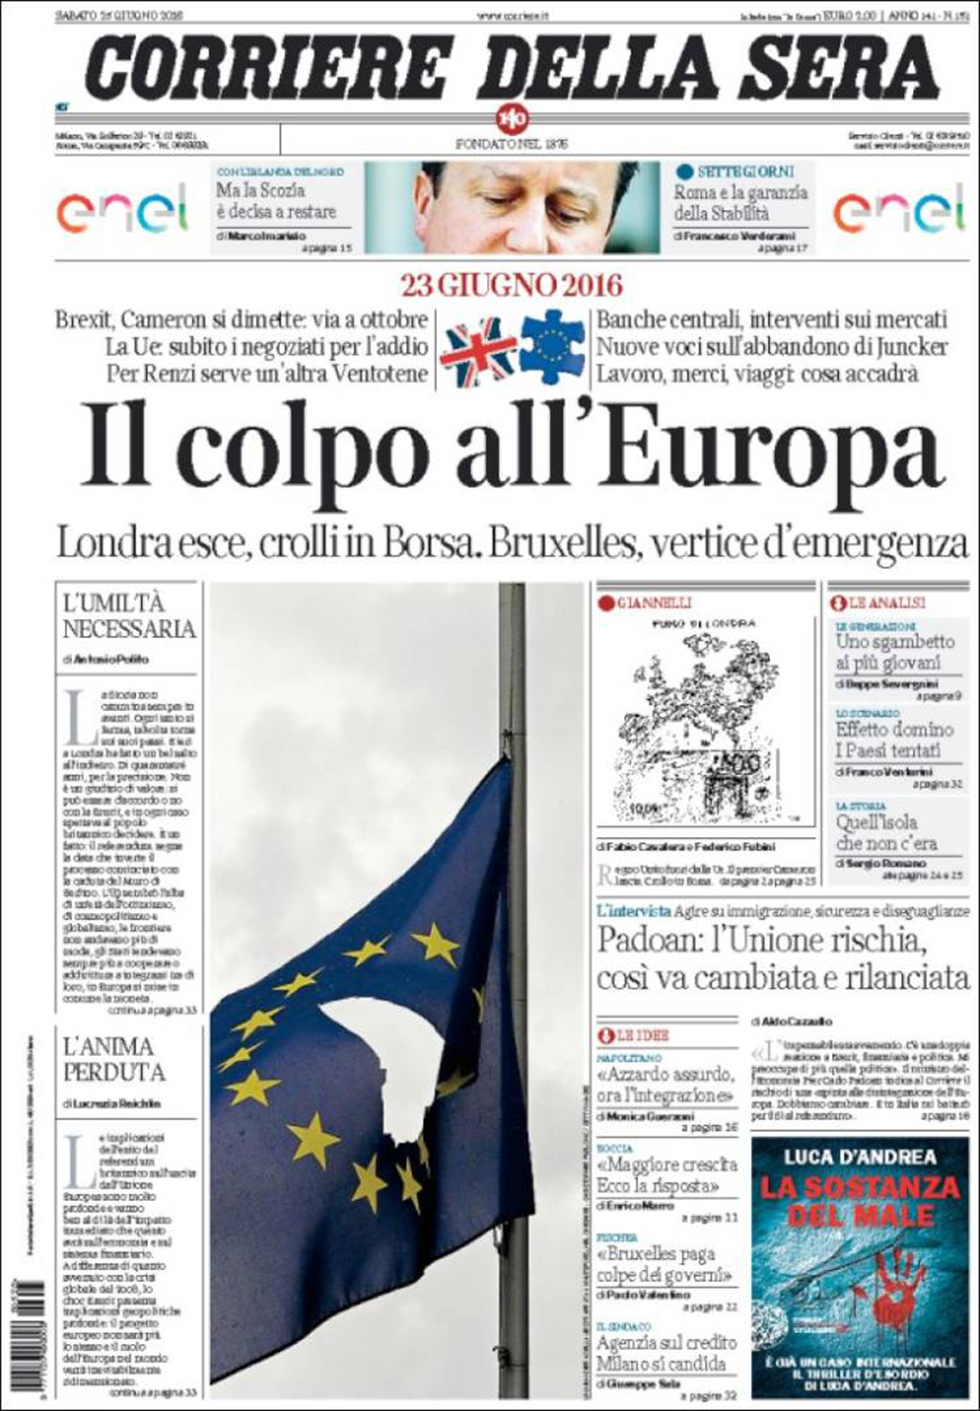 "קוריירה דלה סרה" האיטלקי: "מכה לאירופה" ()